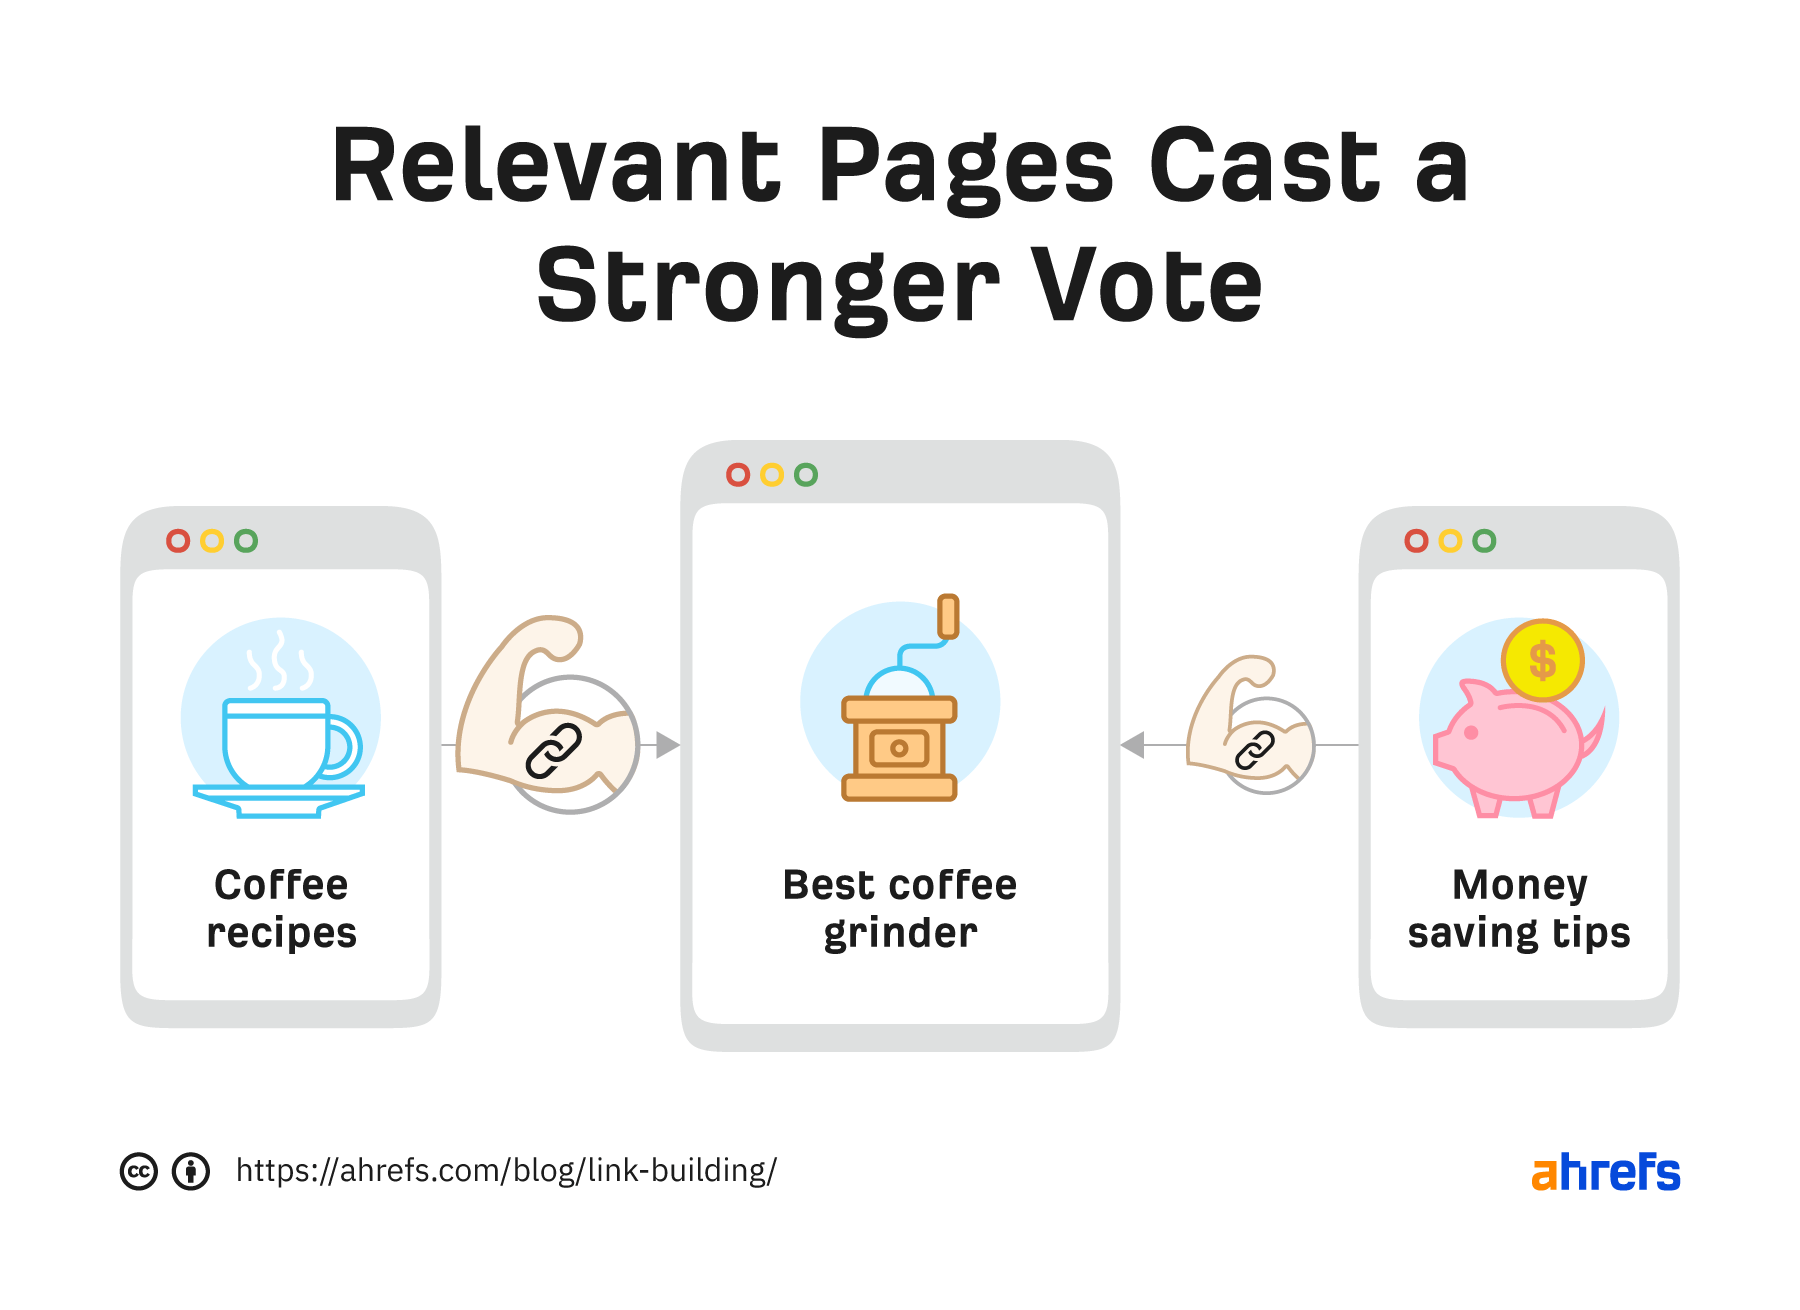 Ilustración de cómo las páginas respectivas emiten votos más fuertes para la página